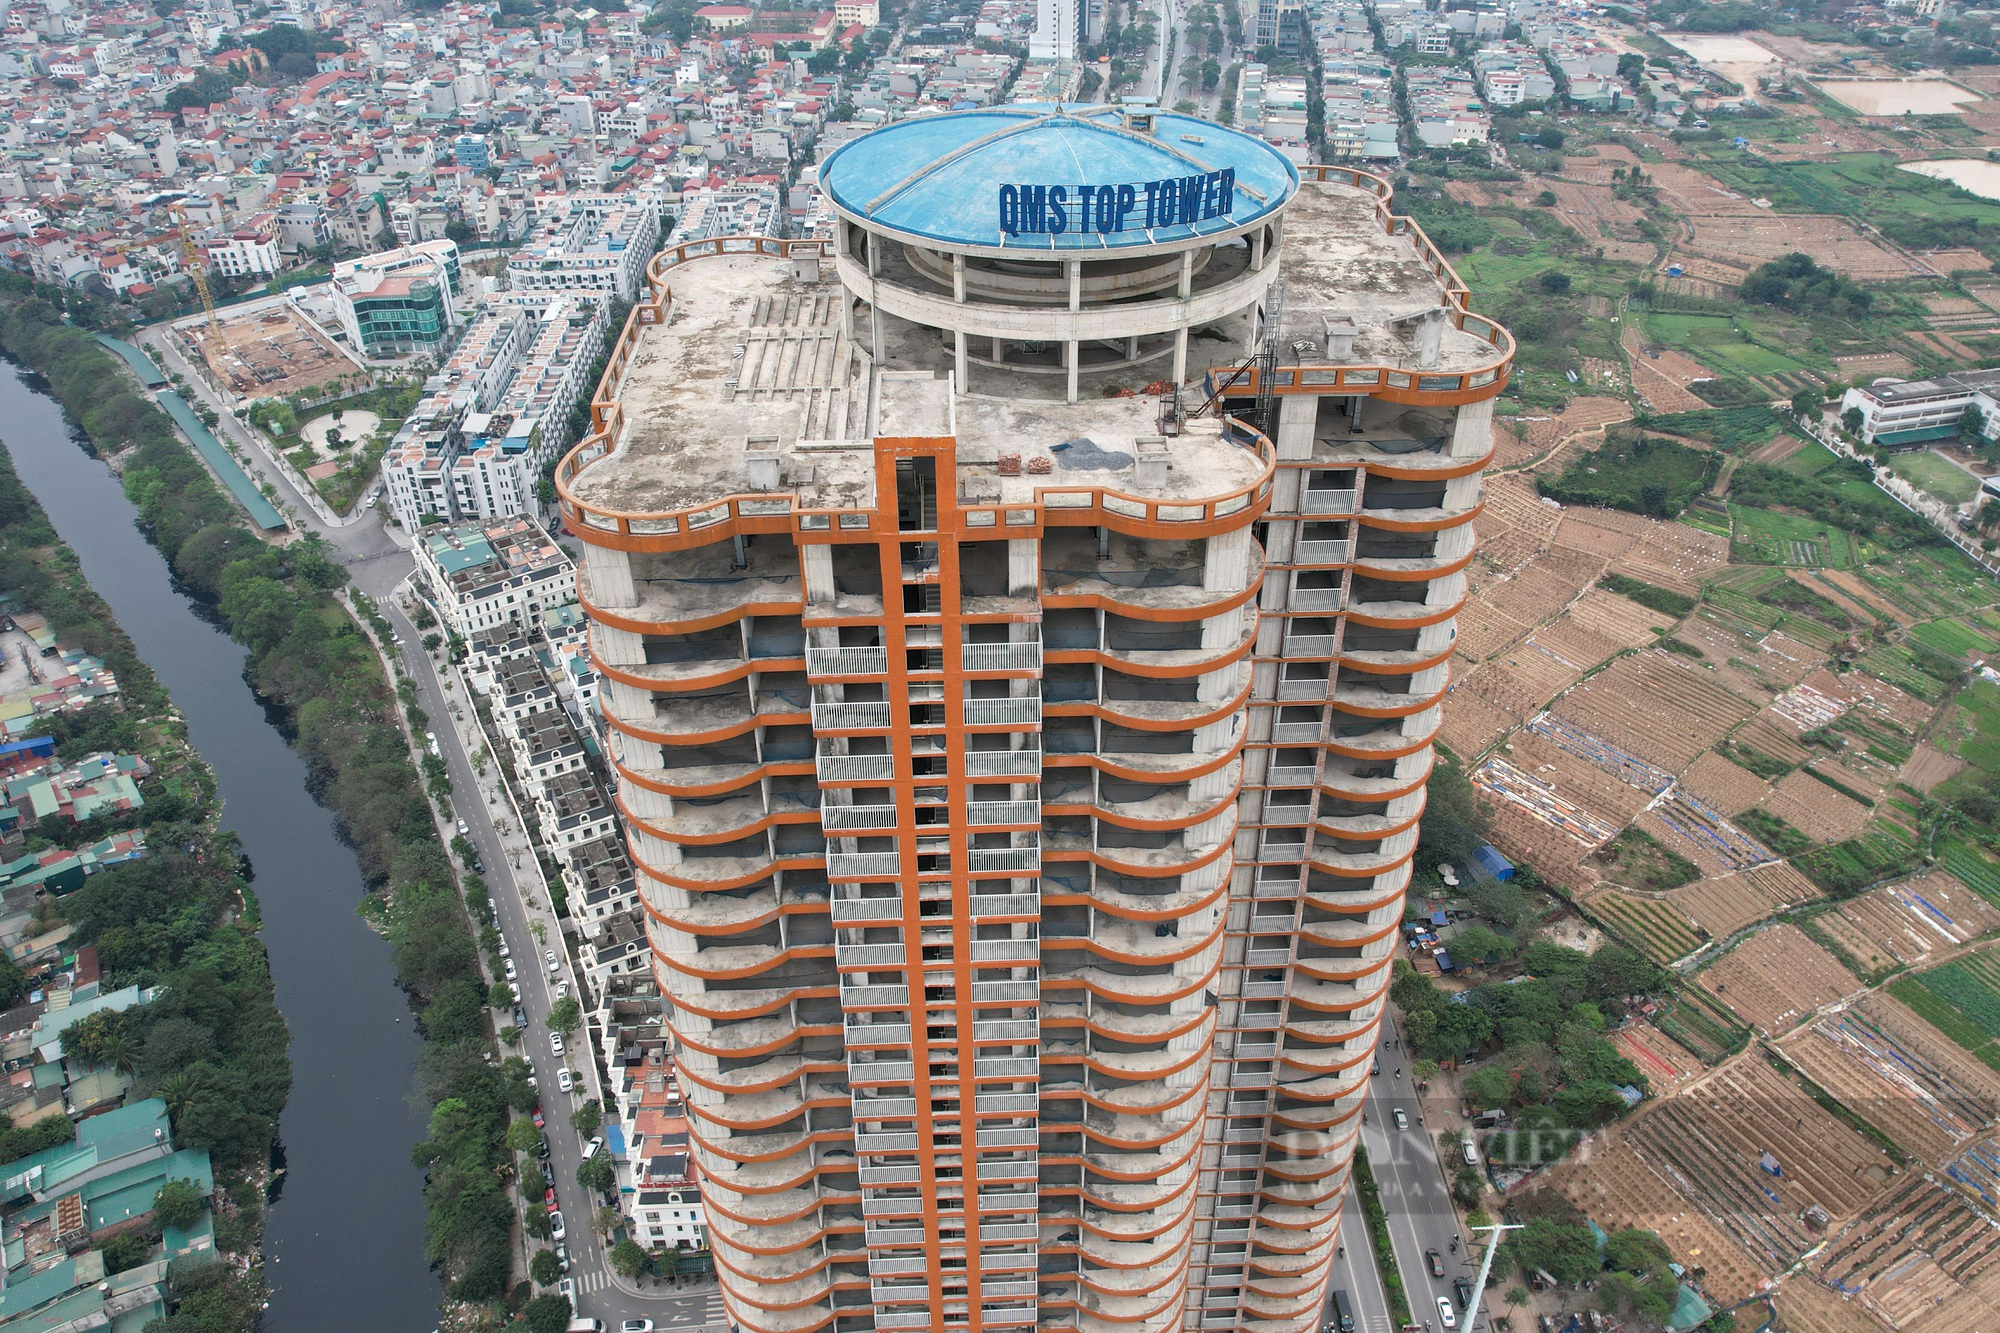 Cất nóc gần 3 năm, một dự án cao 45 tầng tại Hà Nội vẫn chưa thể đưa vào sử dụng - Ảnh 8.